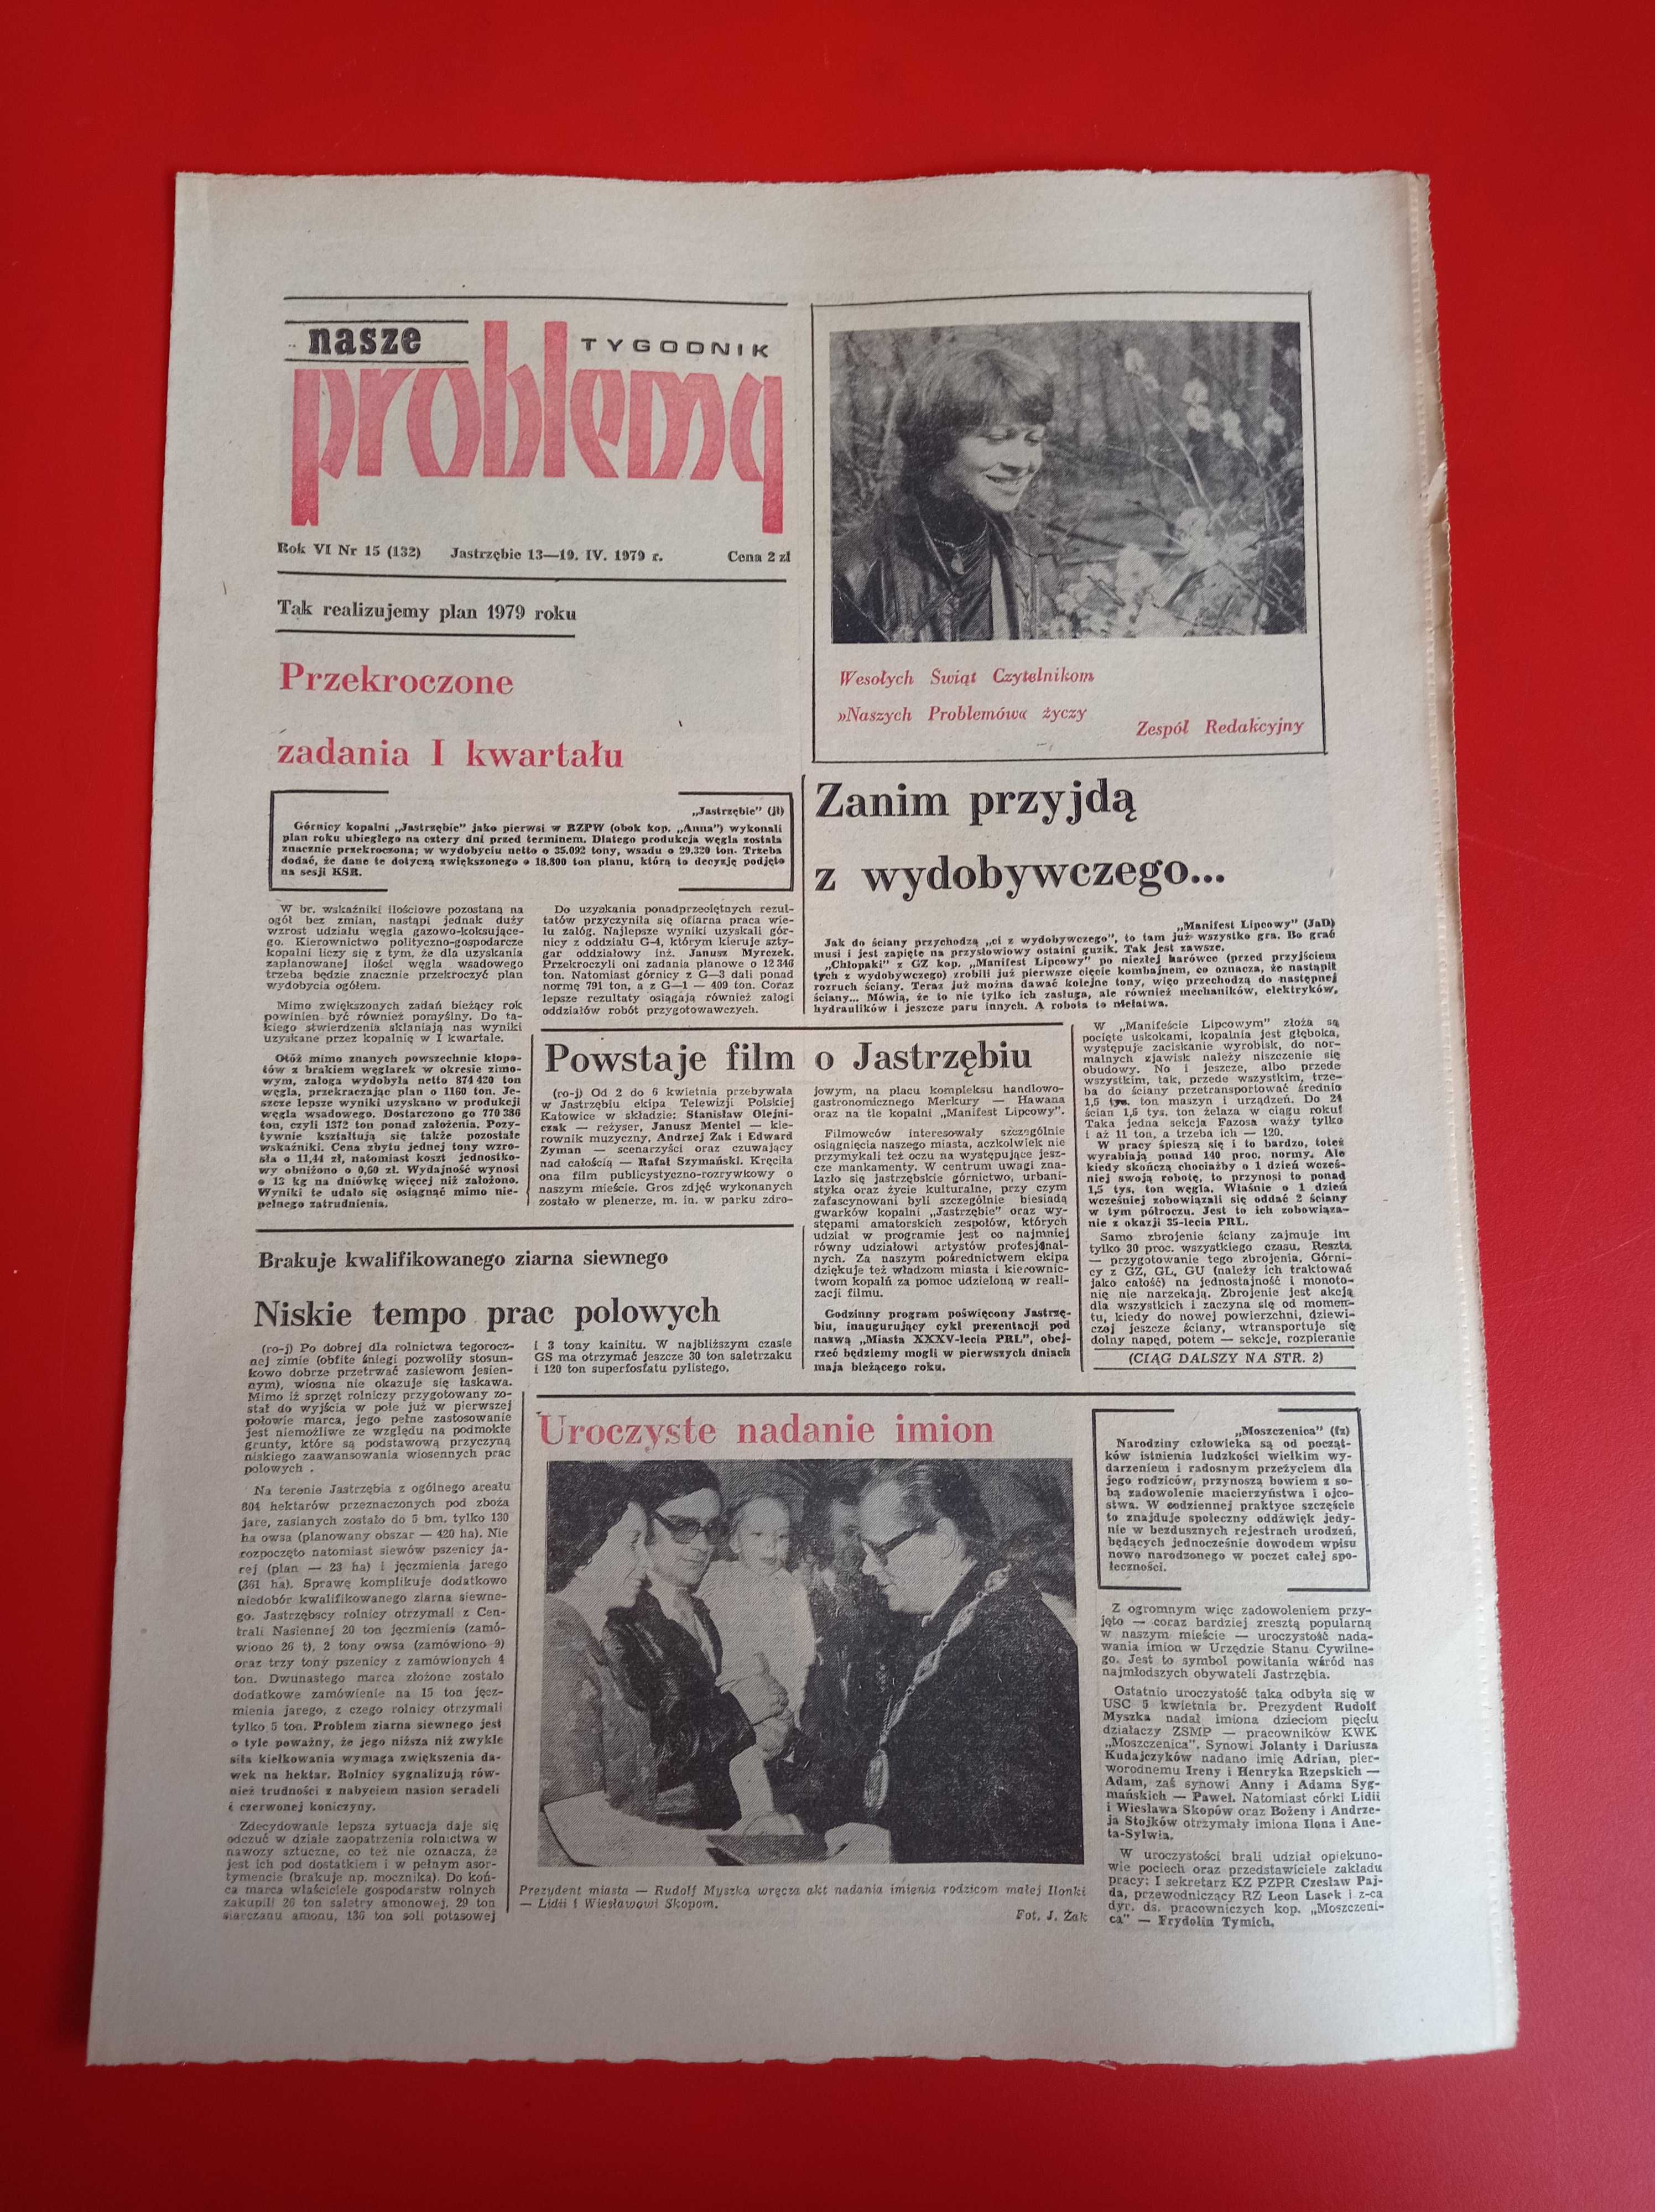 Nasze problemy, Jastrzębie, nr 15, 13-19 kwietnia 1979